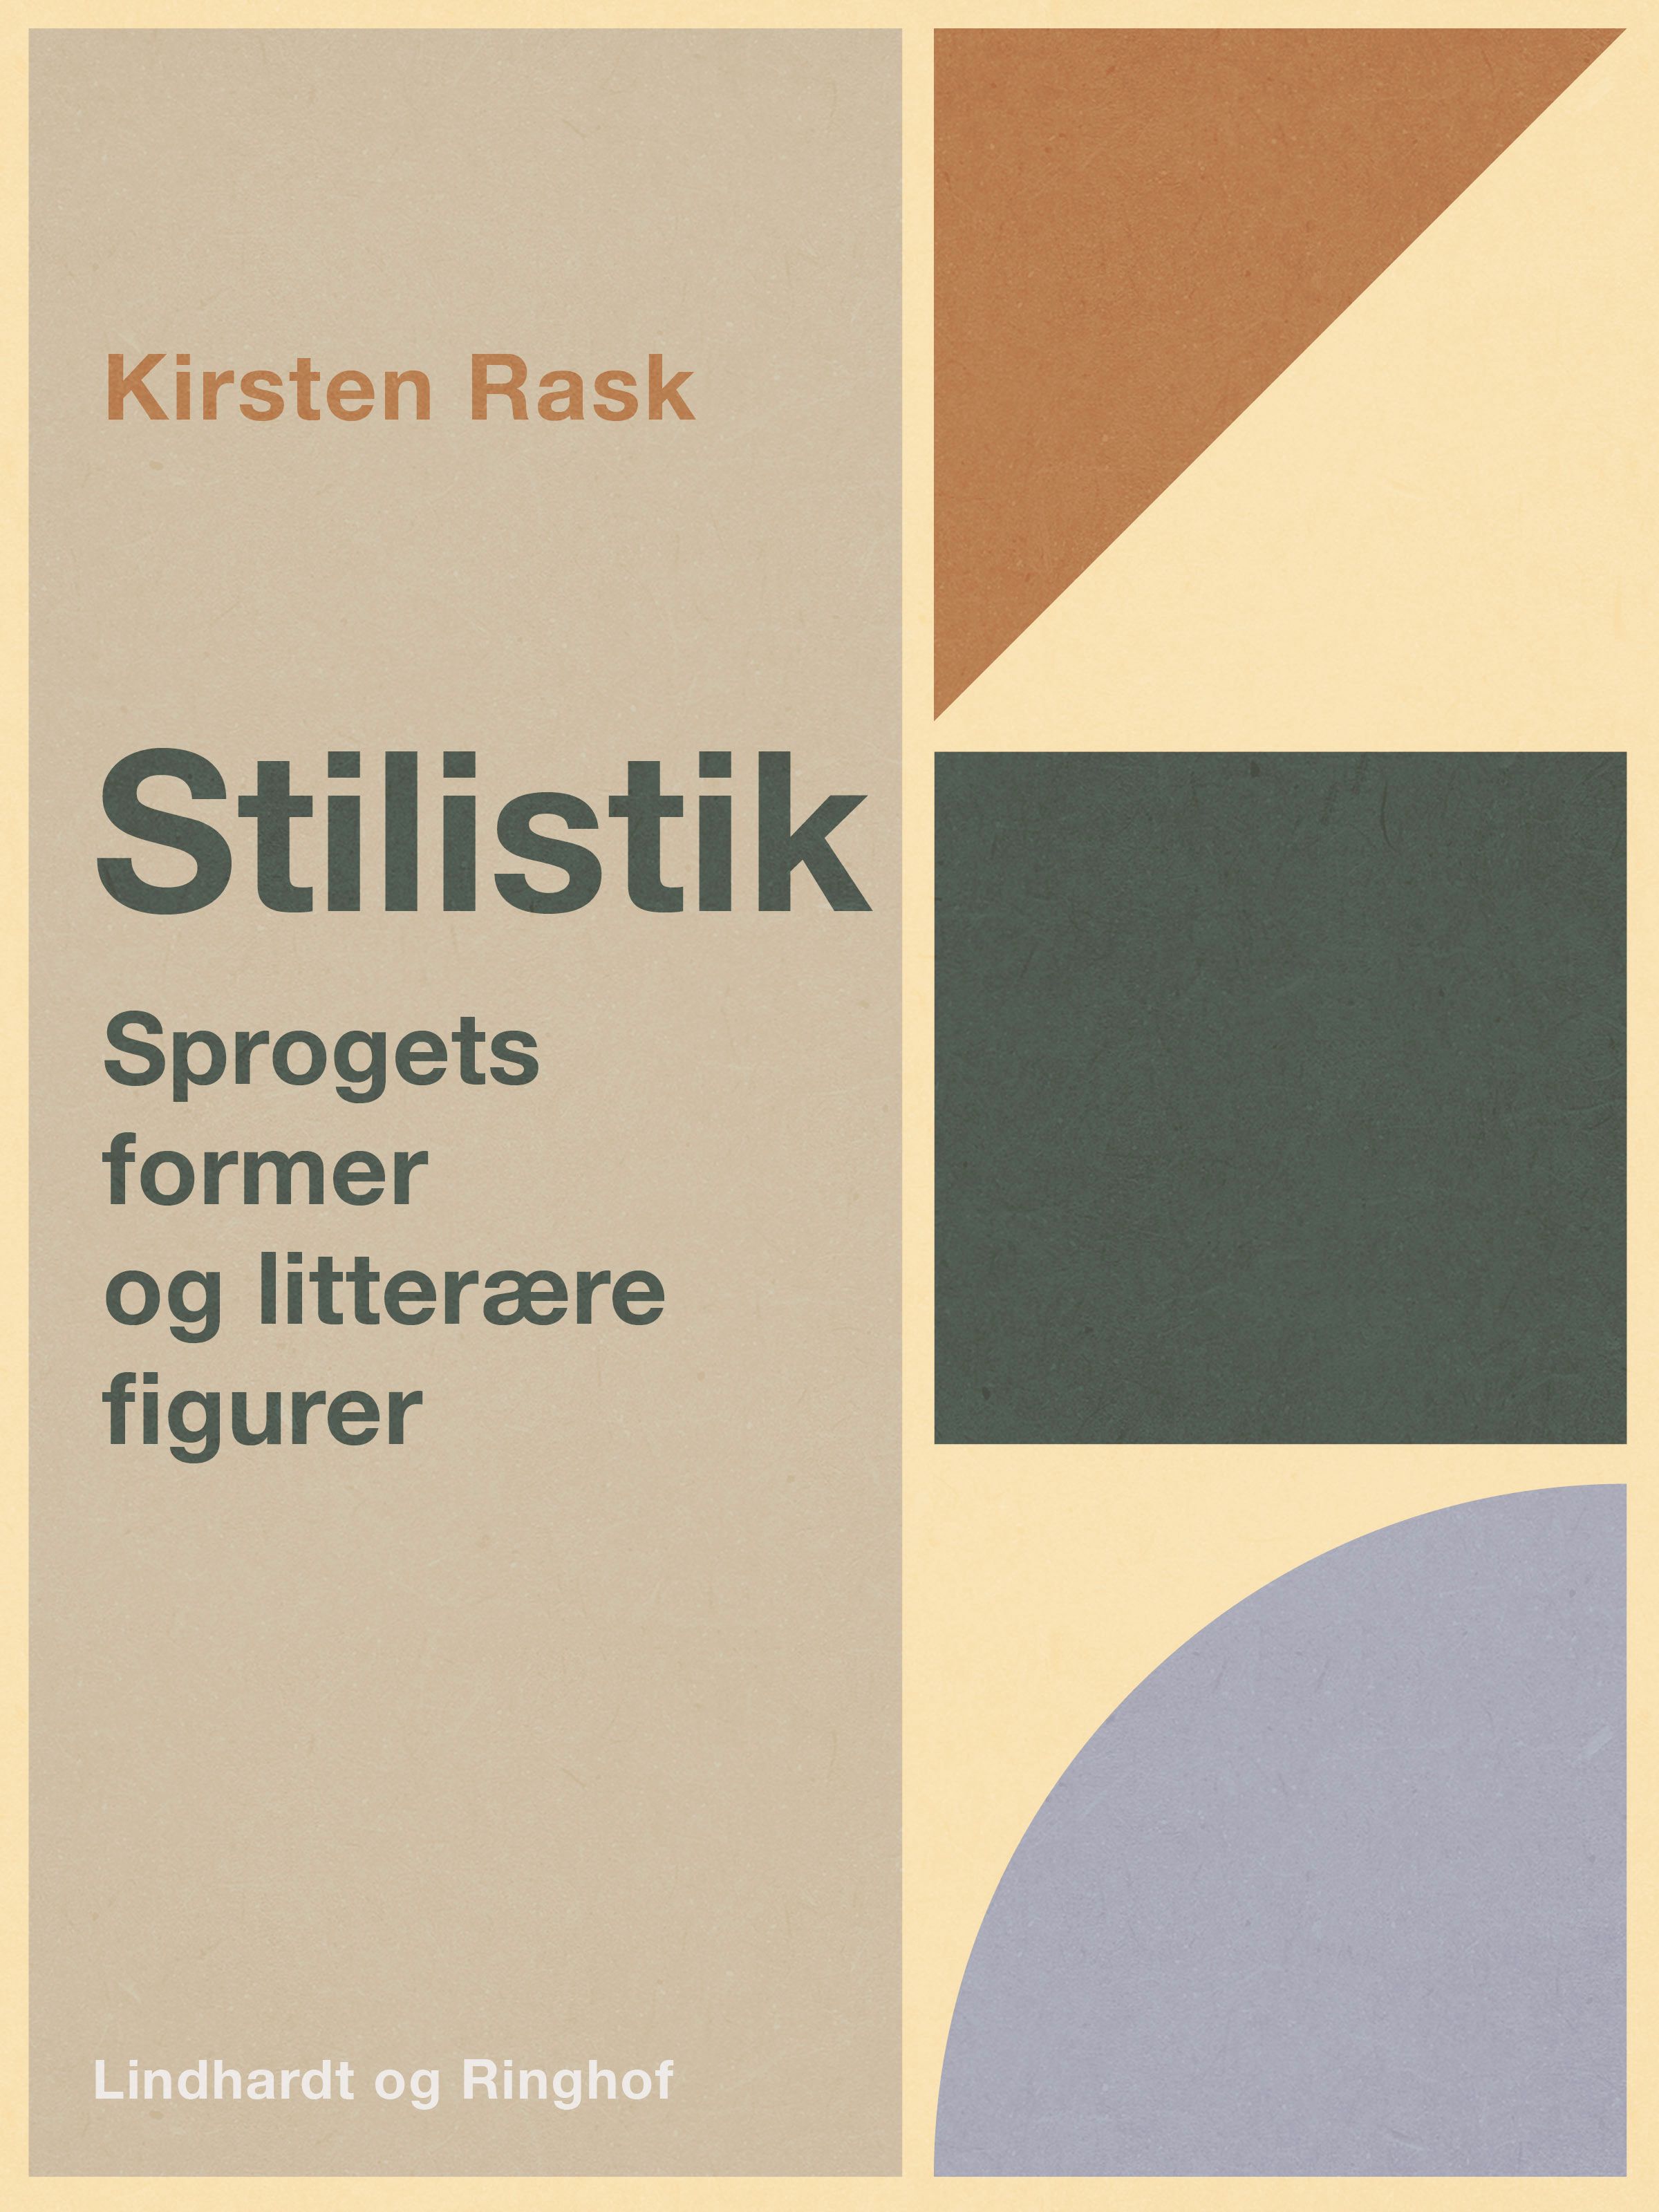 Stilistik. Sprogets former og litterære figurer, e-bog af Kirsten Rask